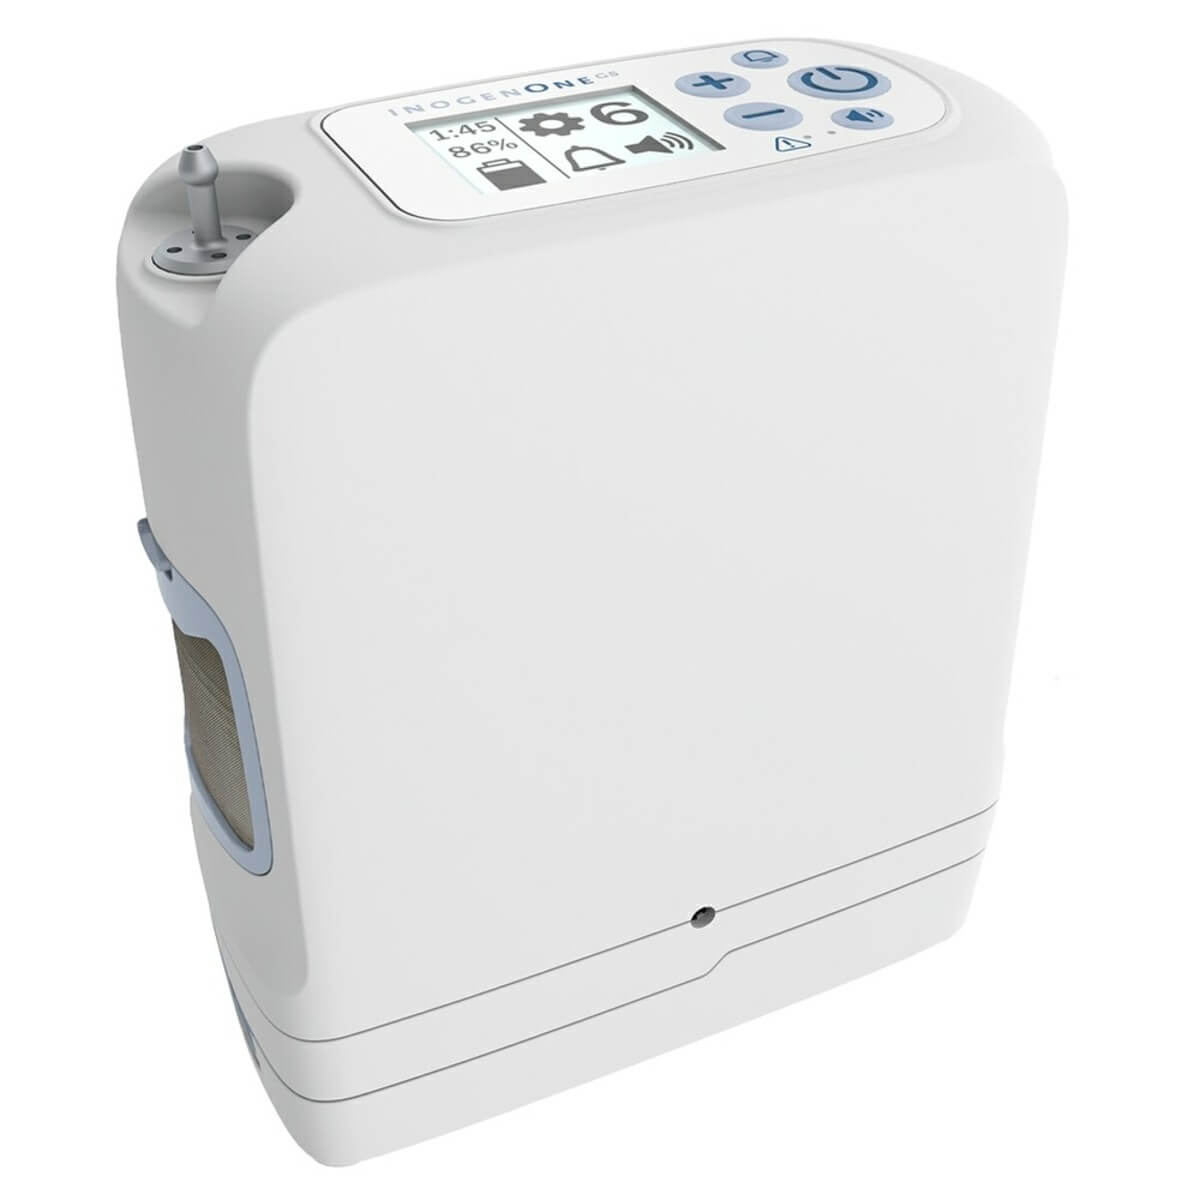 Iinogen One G5 Portable Oxygen Concentrator 